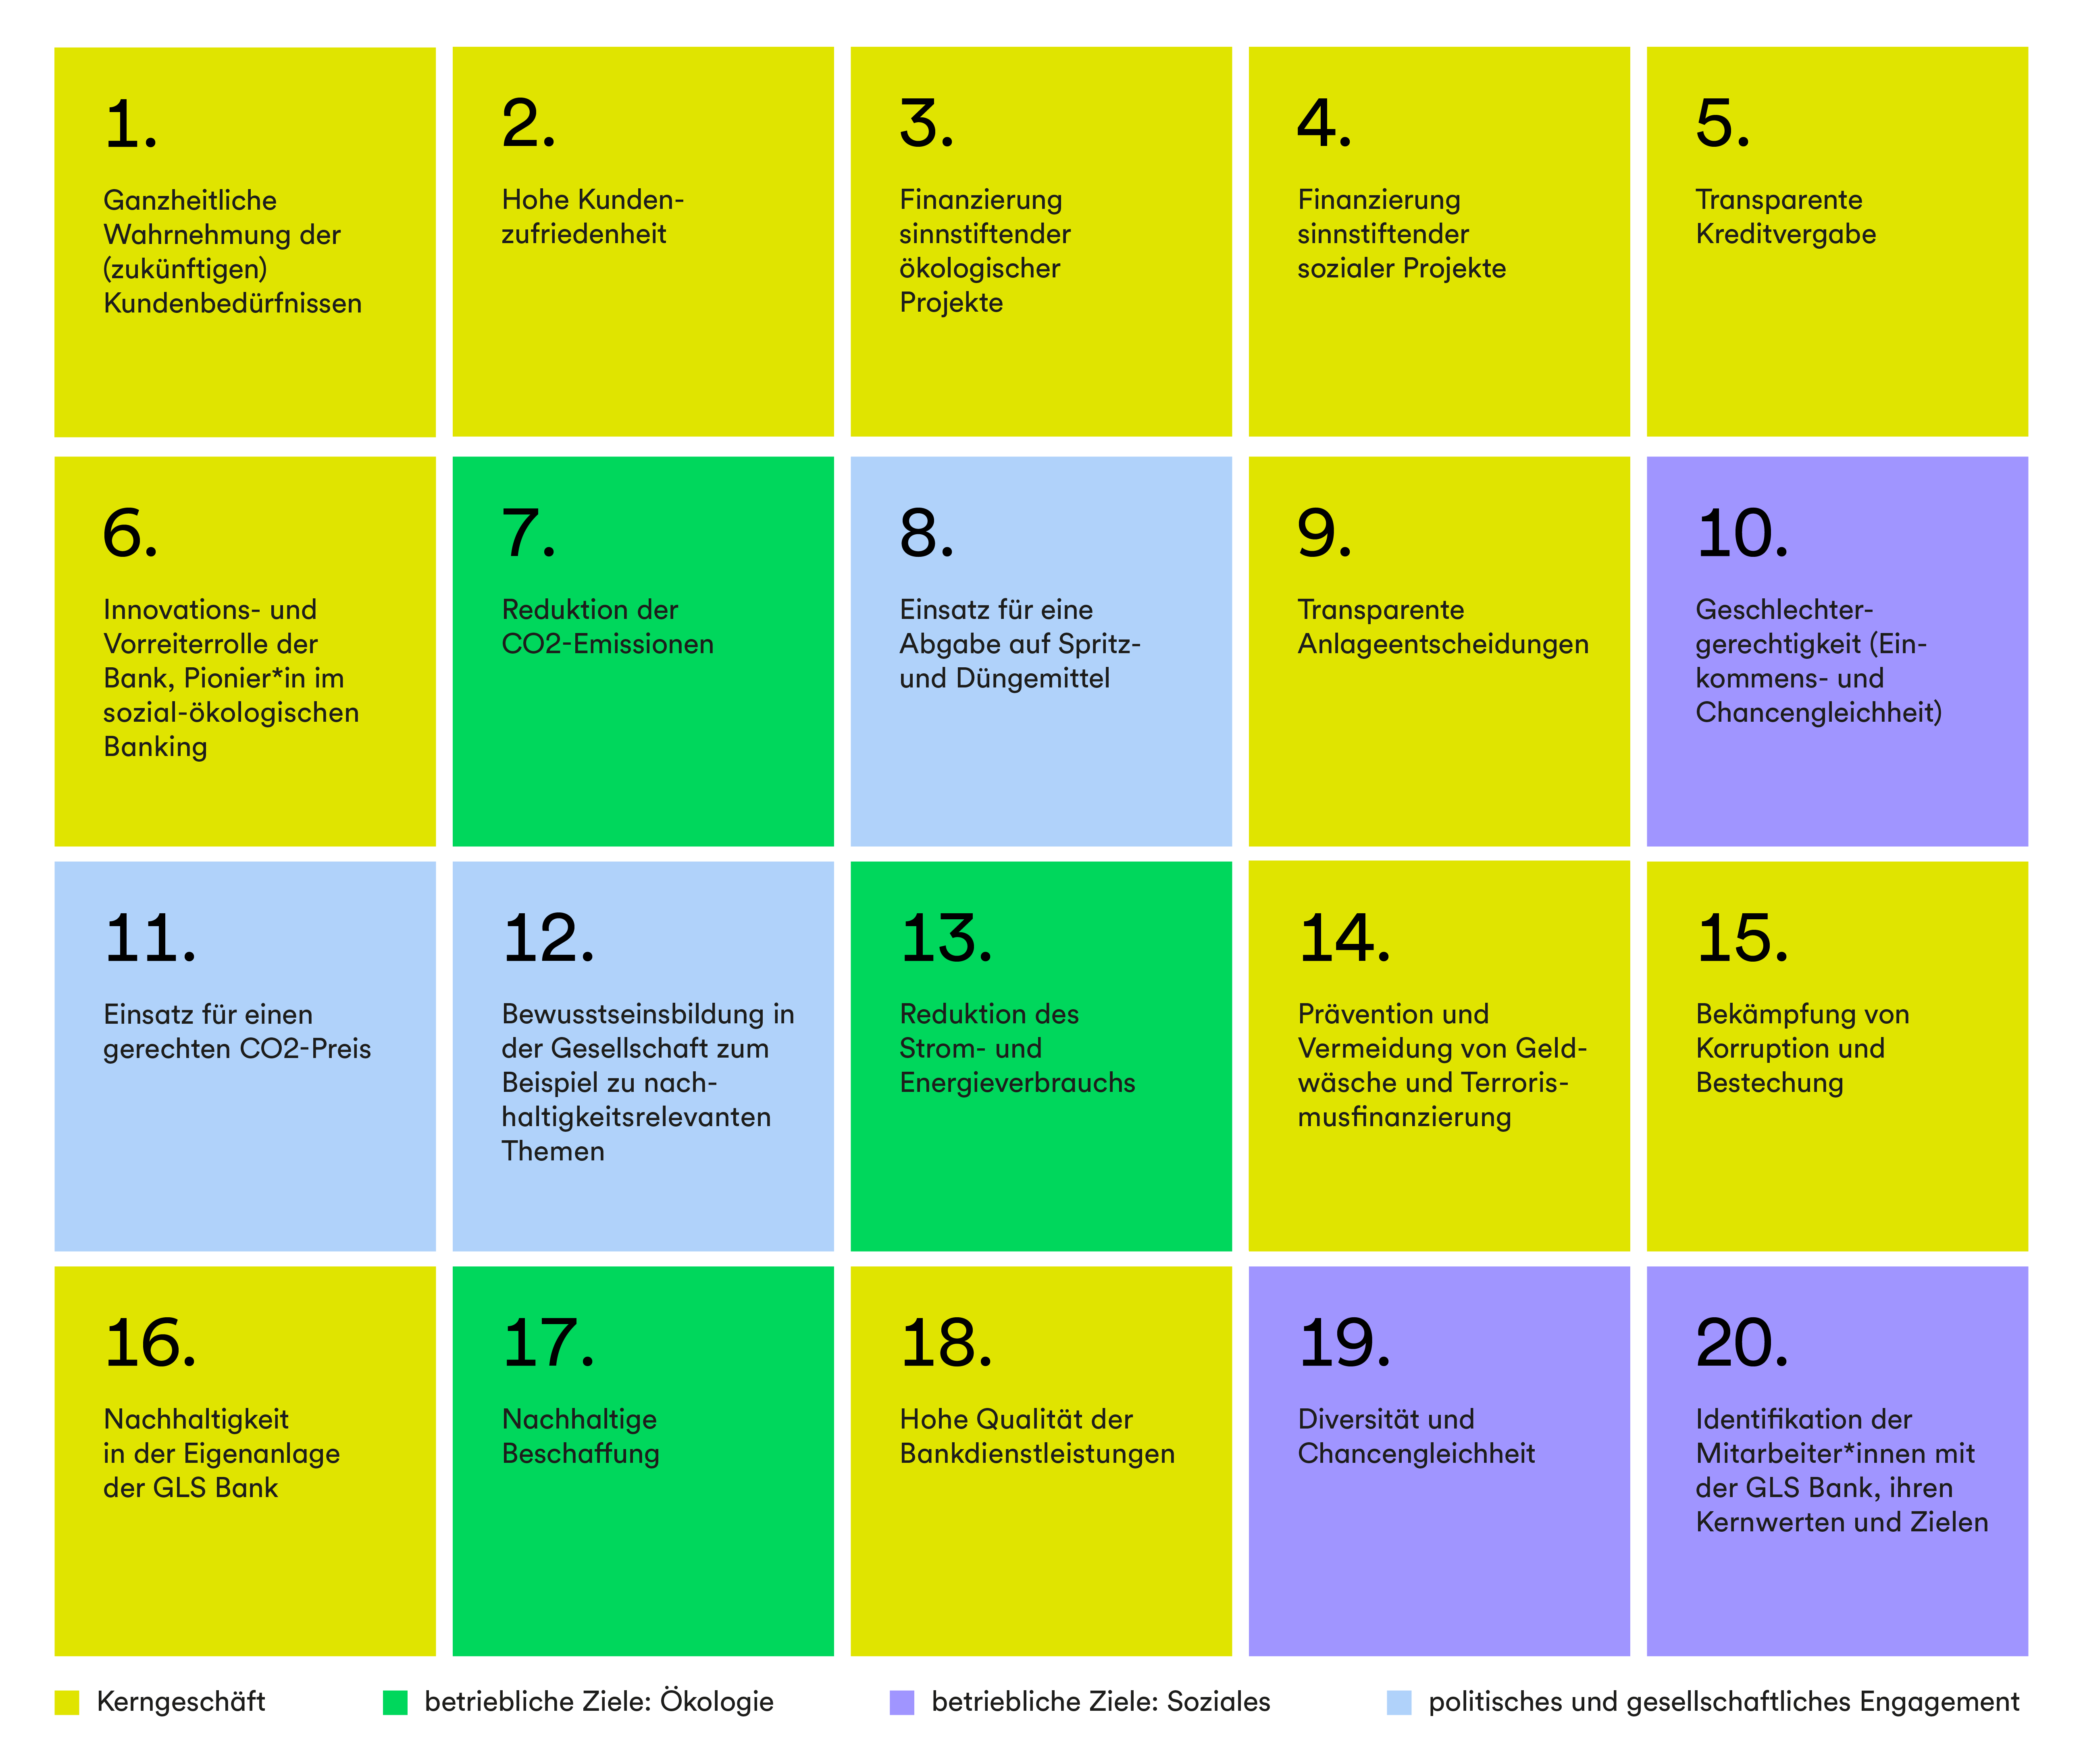 Eine Grafik, die in 20 Kacheln die Ergebnisse der Wesentlichkeitsanalyse darstellt, farblich aufgeteilt nach Kerngeschäft, betriebliche Ziele: Ökologie, betriebliche Ziele: Soziales, und politisches und gesellschaftliches Engagement.